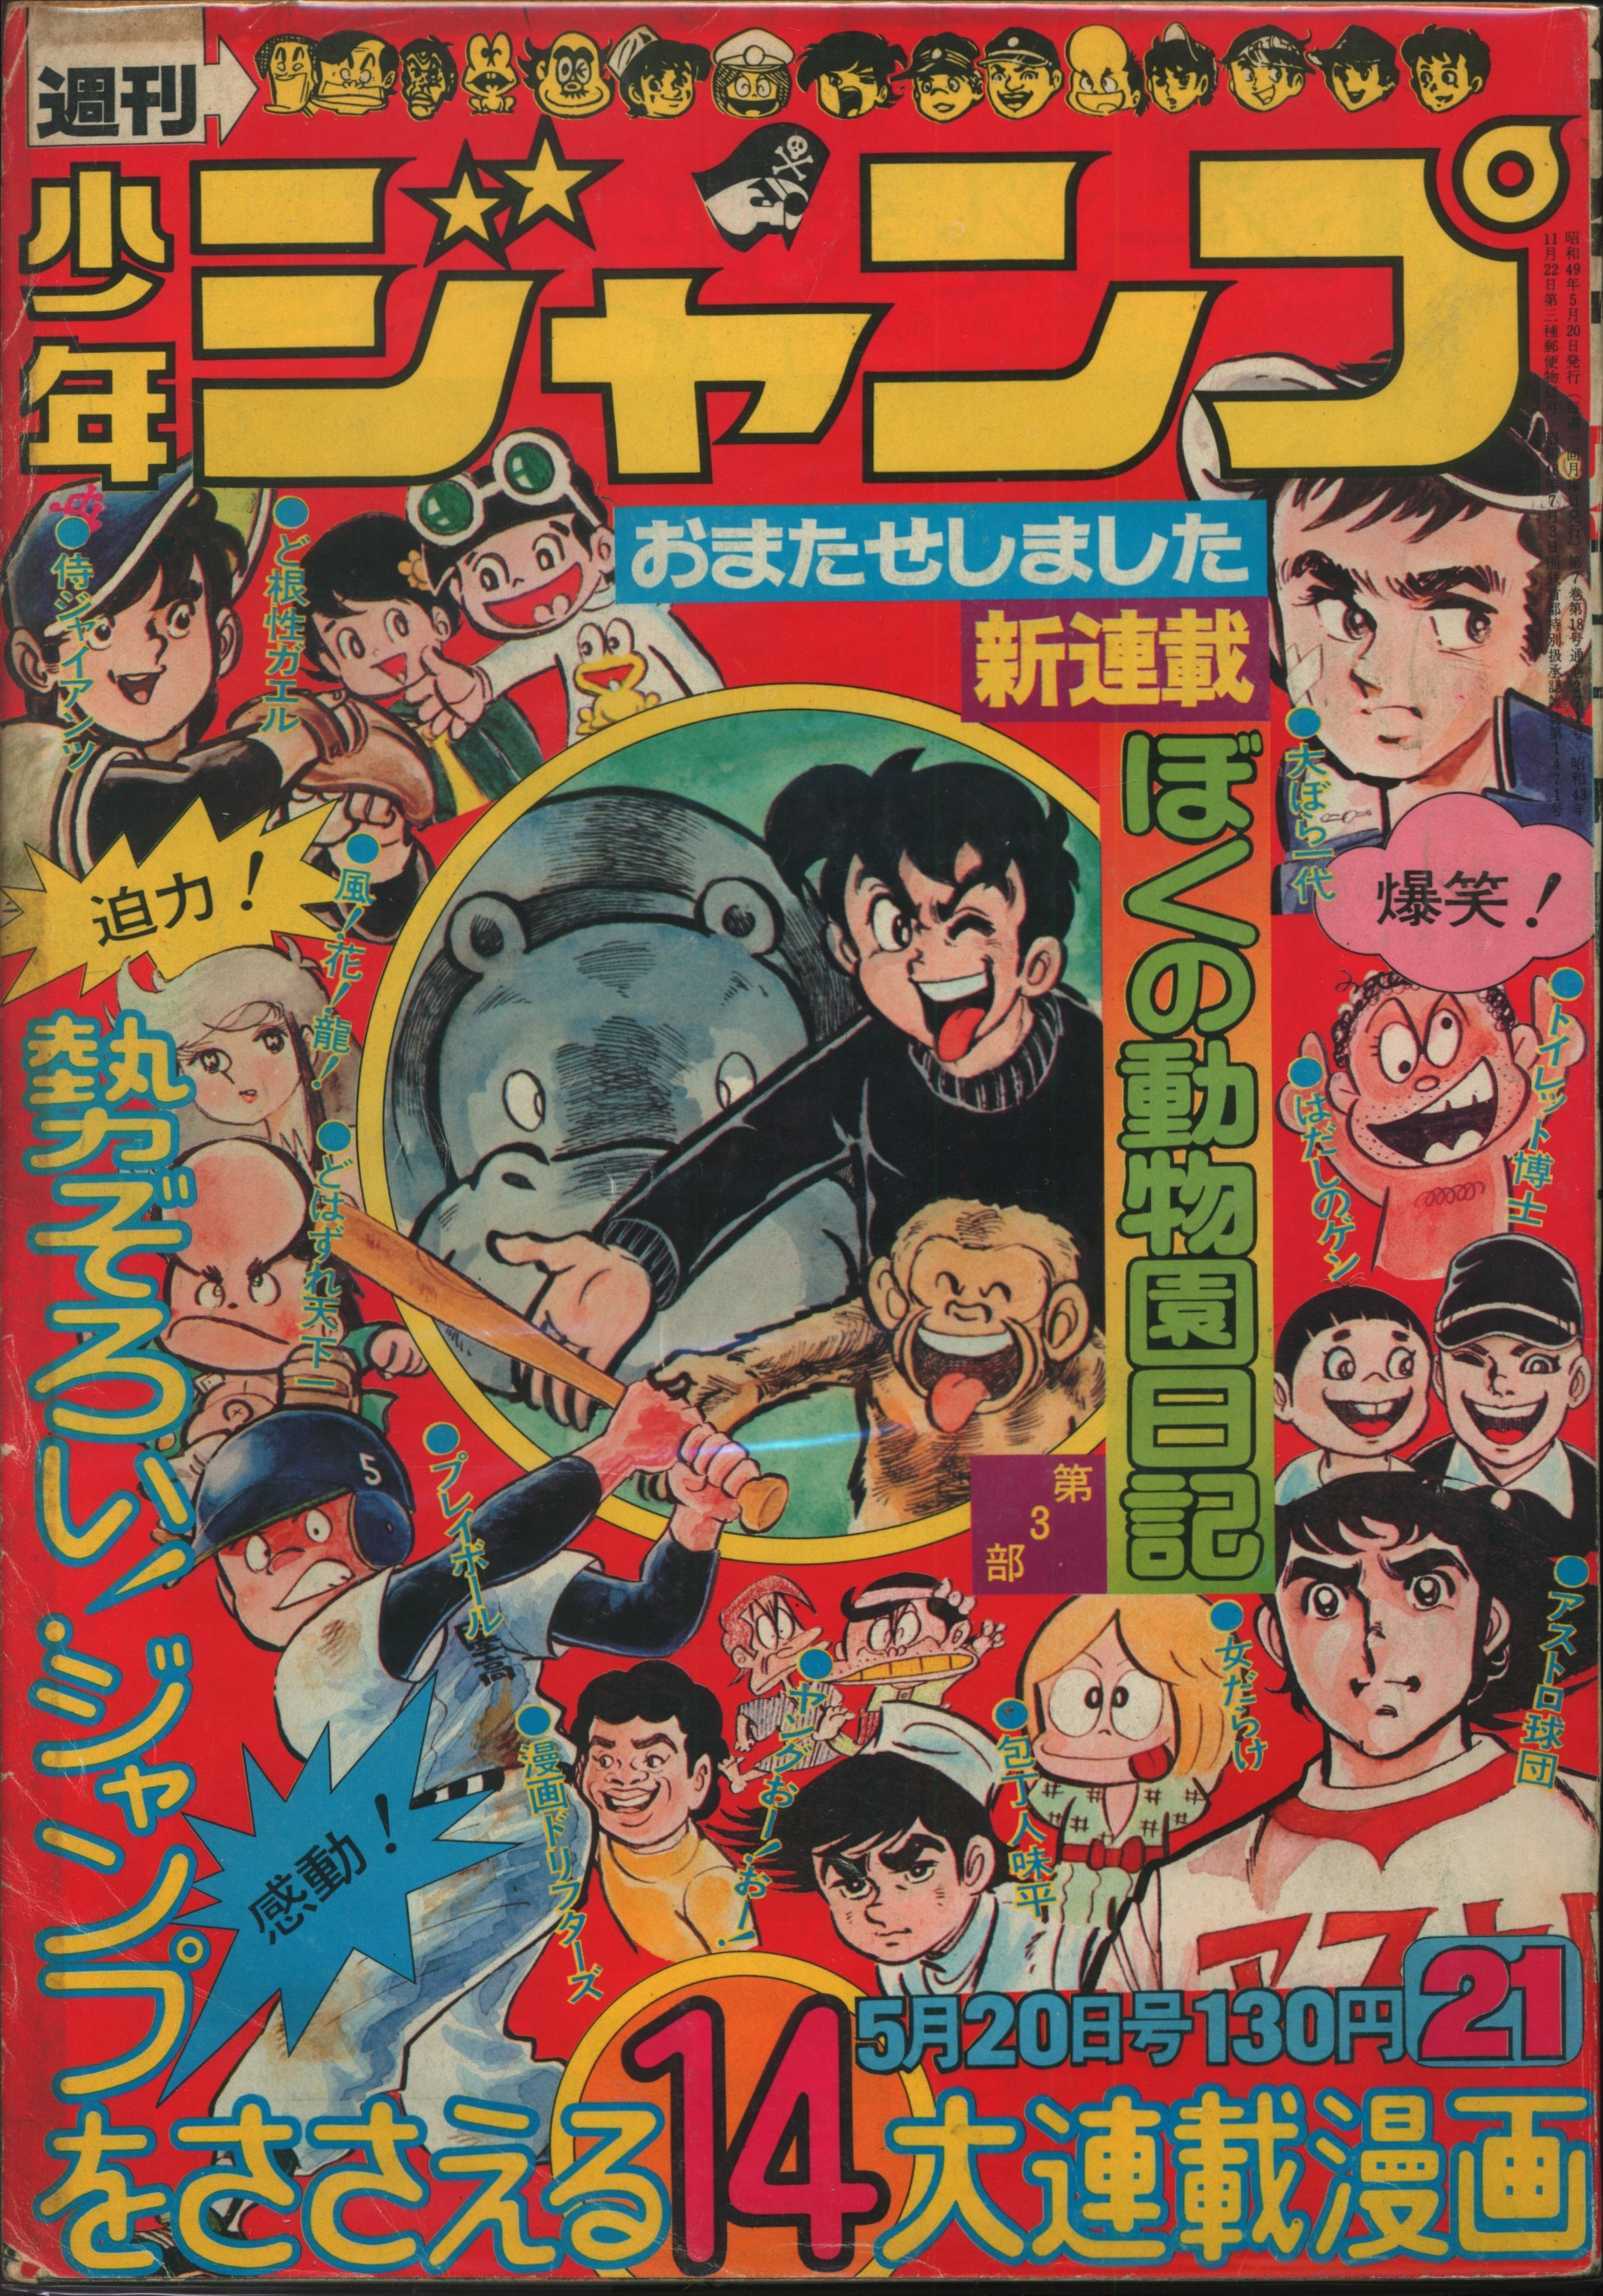 集英社 1974年 昭和49年 の漫画雑誌 週刊少年ジャンプ 1974年 昭和49年 21 7421 まんだらけ Mandarake